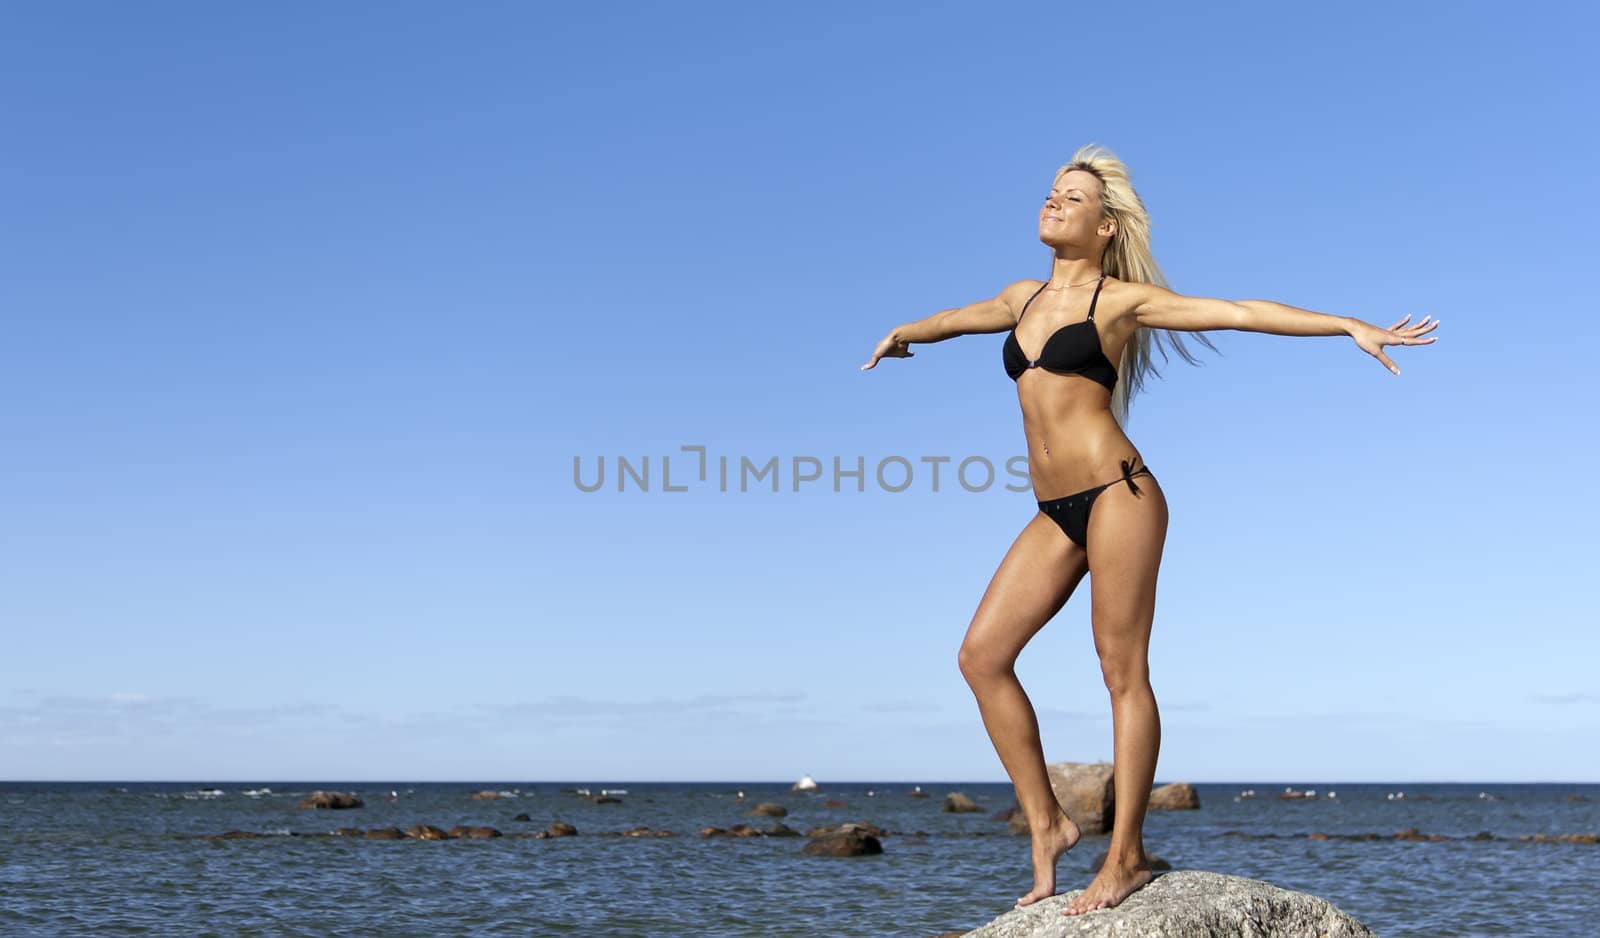 girl in bikini posing on a rock near the sea by dmitrimaruta